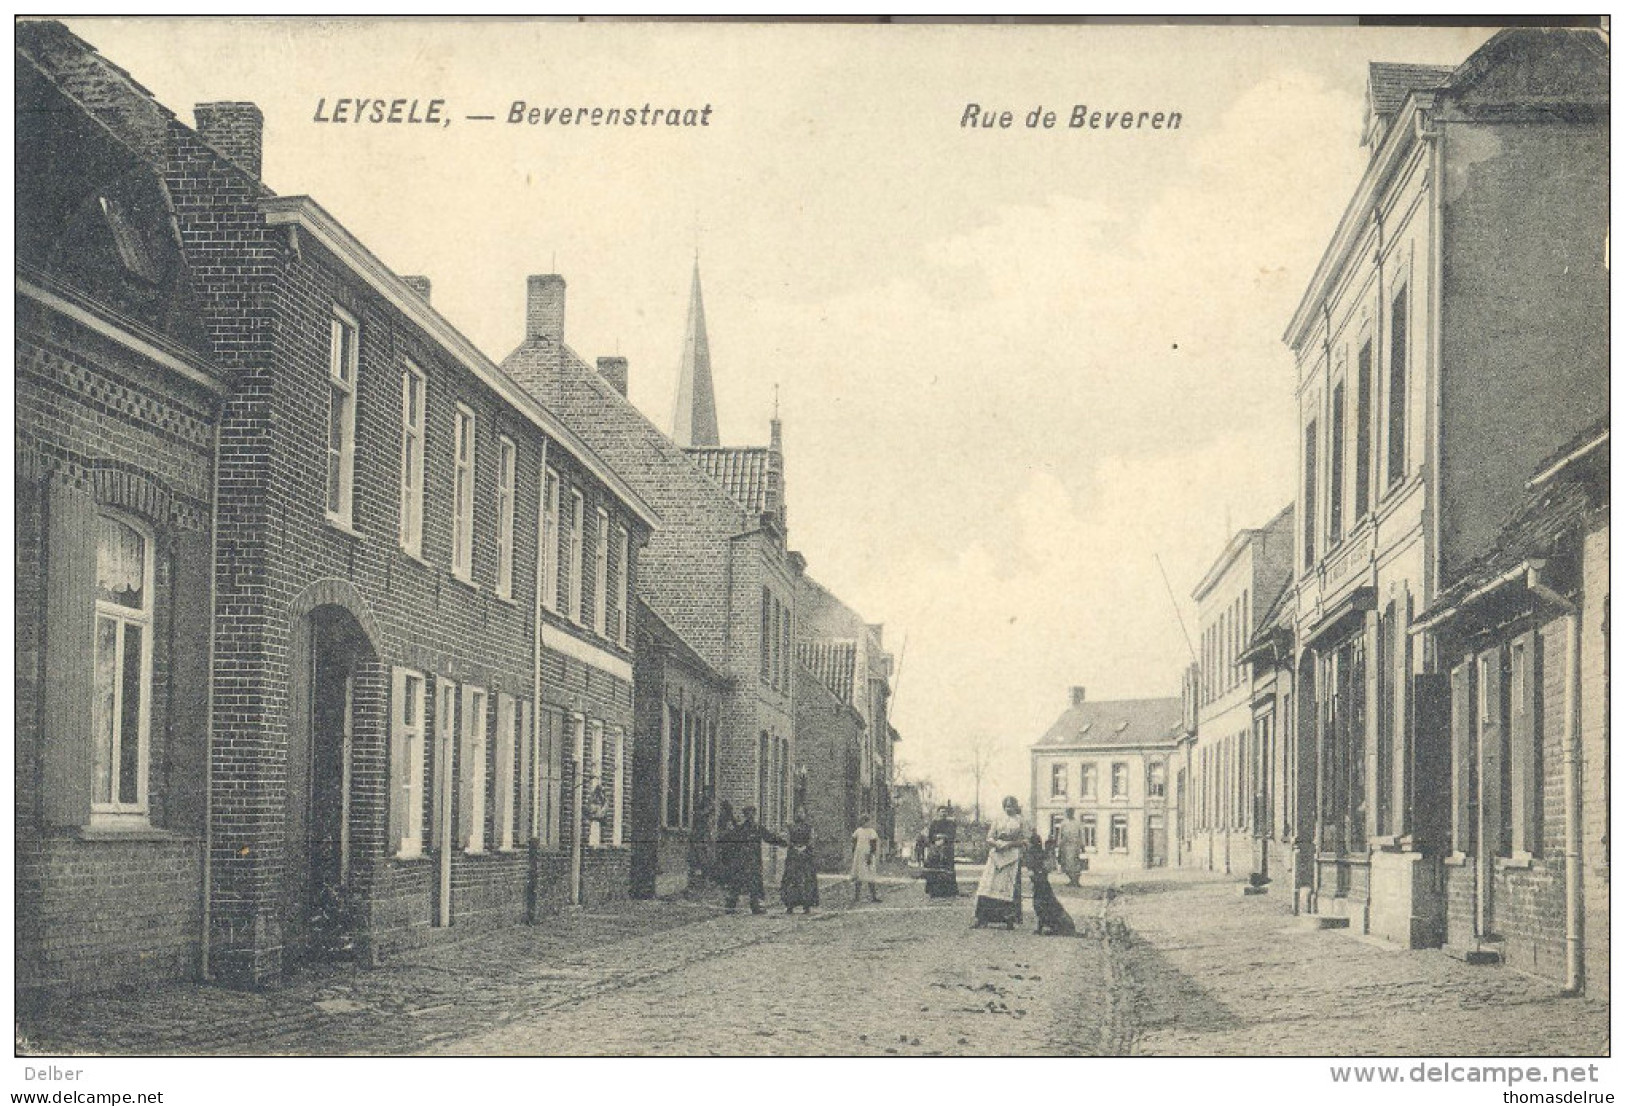 Ik12: LEYSELE,-Beverenstraat Rue De Beveren : Correspondance Militaire: * LEYSEELE* 1 XII 14 [sterstempel]> Charente - Unbesetzte Zone